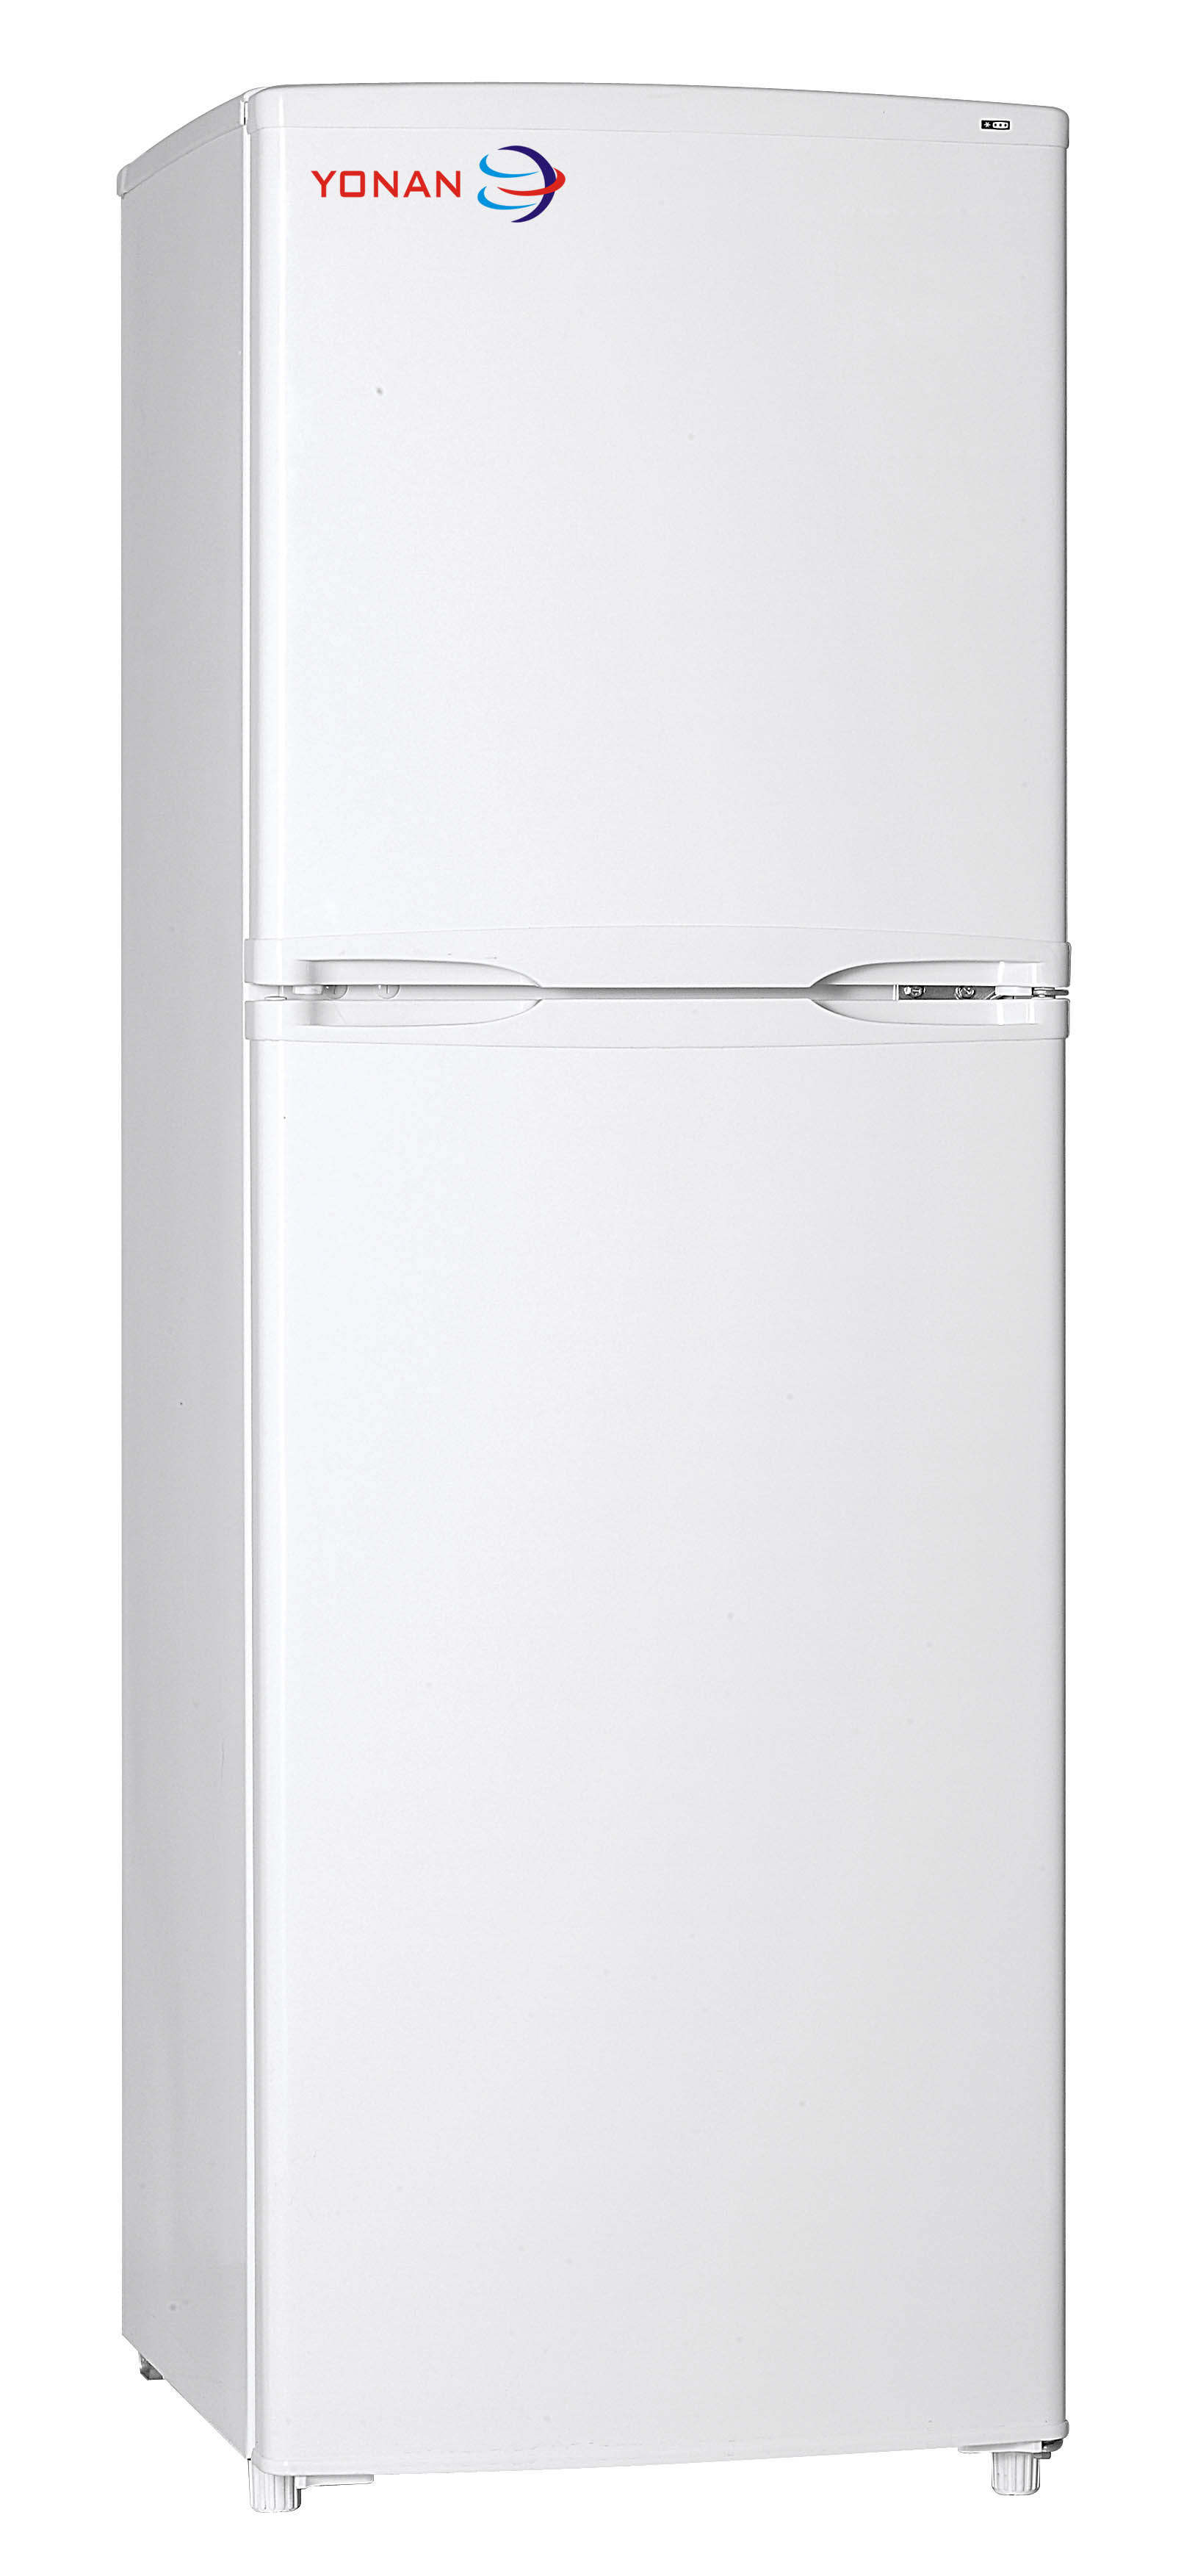 Top Freezer 144 Liters 2 Door Refrigerator